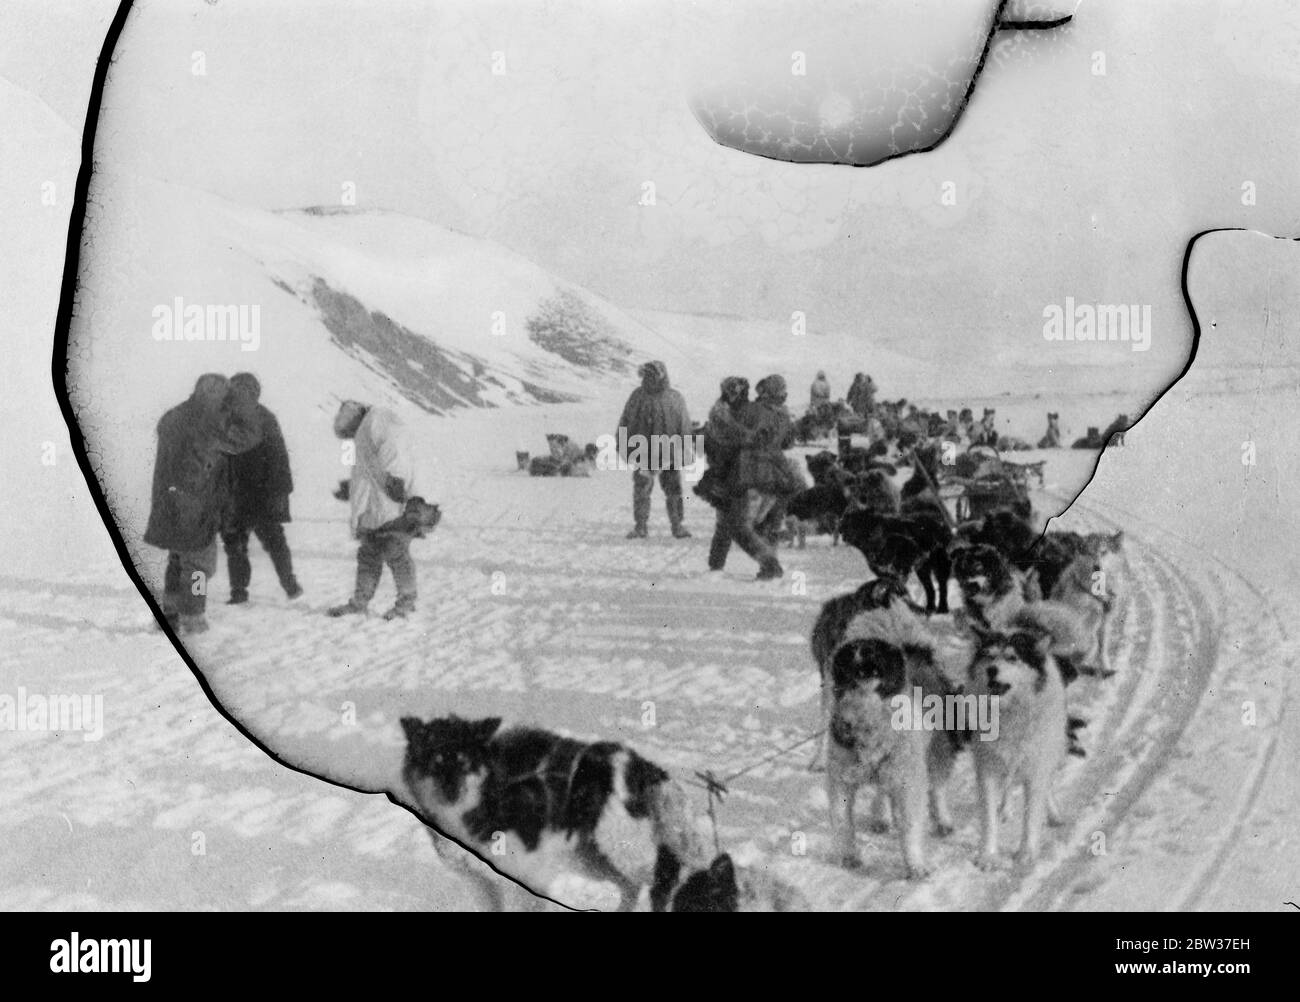 SS Chelyuskin ein sowjetisches Dampfschiff, das auf eine Expedition geschickt wurde, um durch polares Eis entlang der nördlichen Seeroute von Murmansk nach Wladiwostok zu navigieren, das während der Navigation in arktischen Gewässern eisgebunden wurde, wurde es im September in den Eisfeldern gefangen. Danach trieb sie in der Eisschicht, bevor sie am 13. Februar 1934 in der Nähe der Koljuchin-Insel im Tschuktschen Meer niederging. Die Besatzung gelang es, auf das Eis zu entkommen und baute eine provisorische Flugbahn mit nur wenigen Spaten, Eisschaufeln und zwei Brechstangen , die bei der Rettung der Besatzung der geholfen . 53 Männer gingen über t Stockfoto